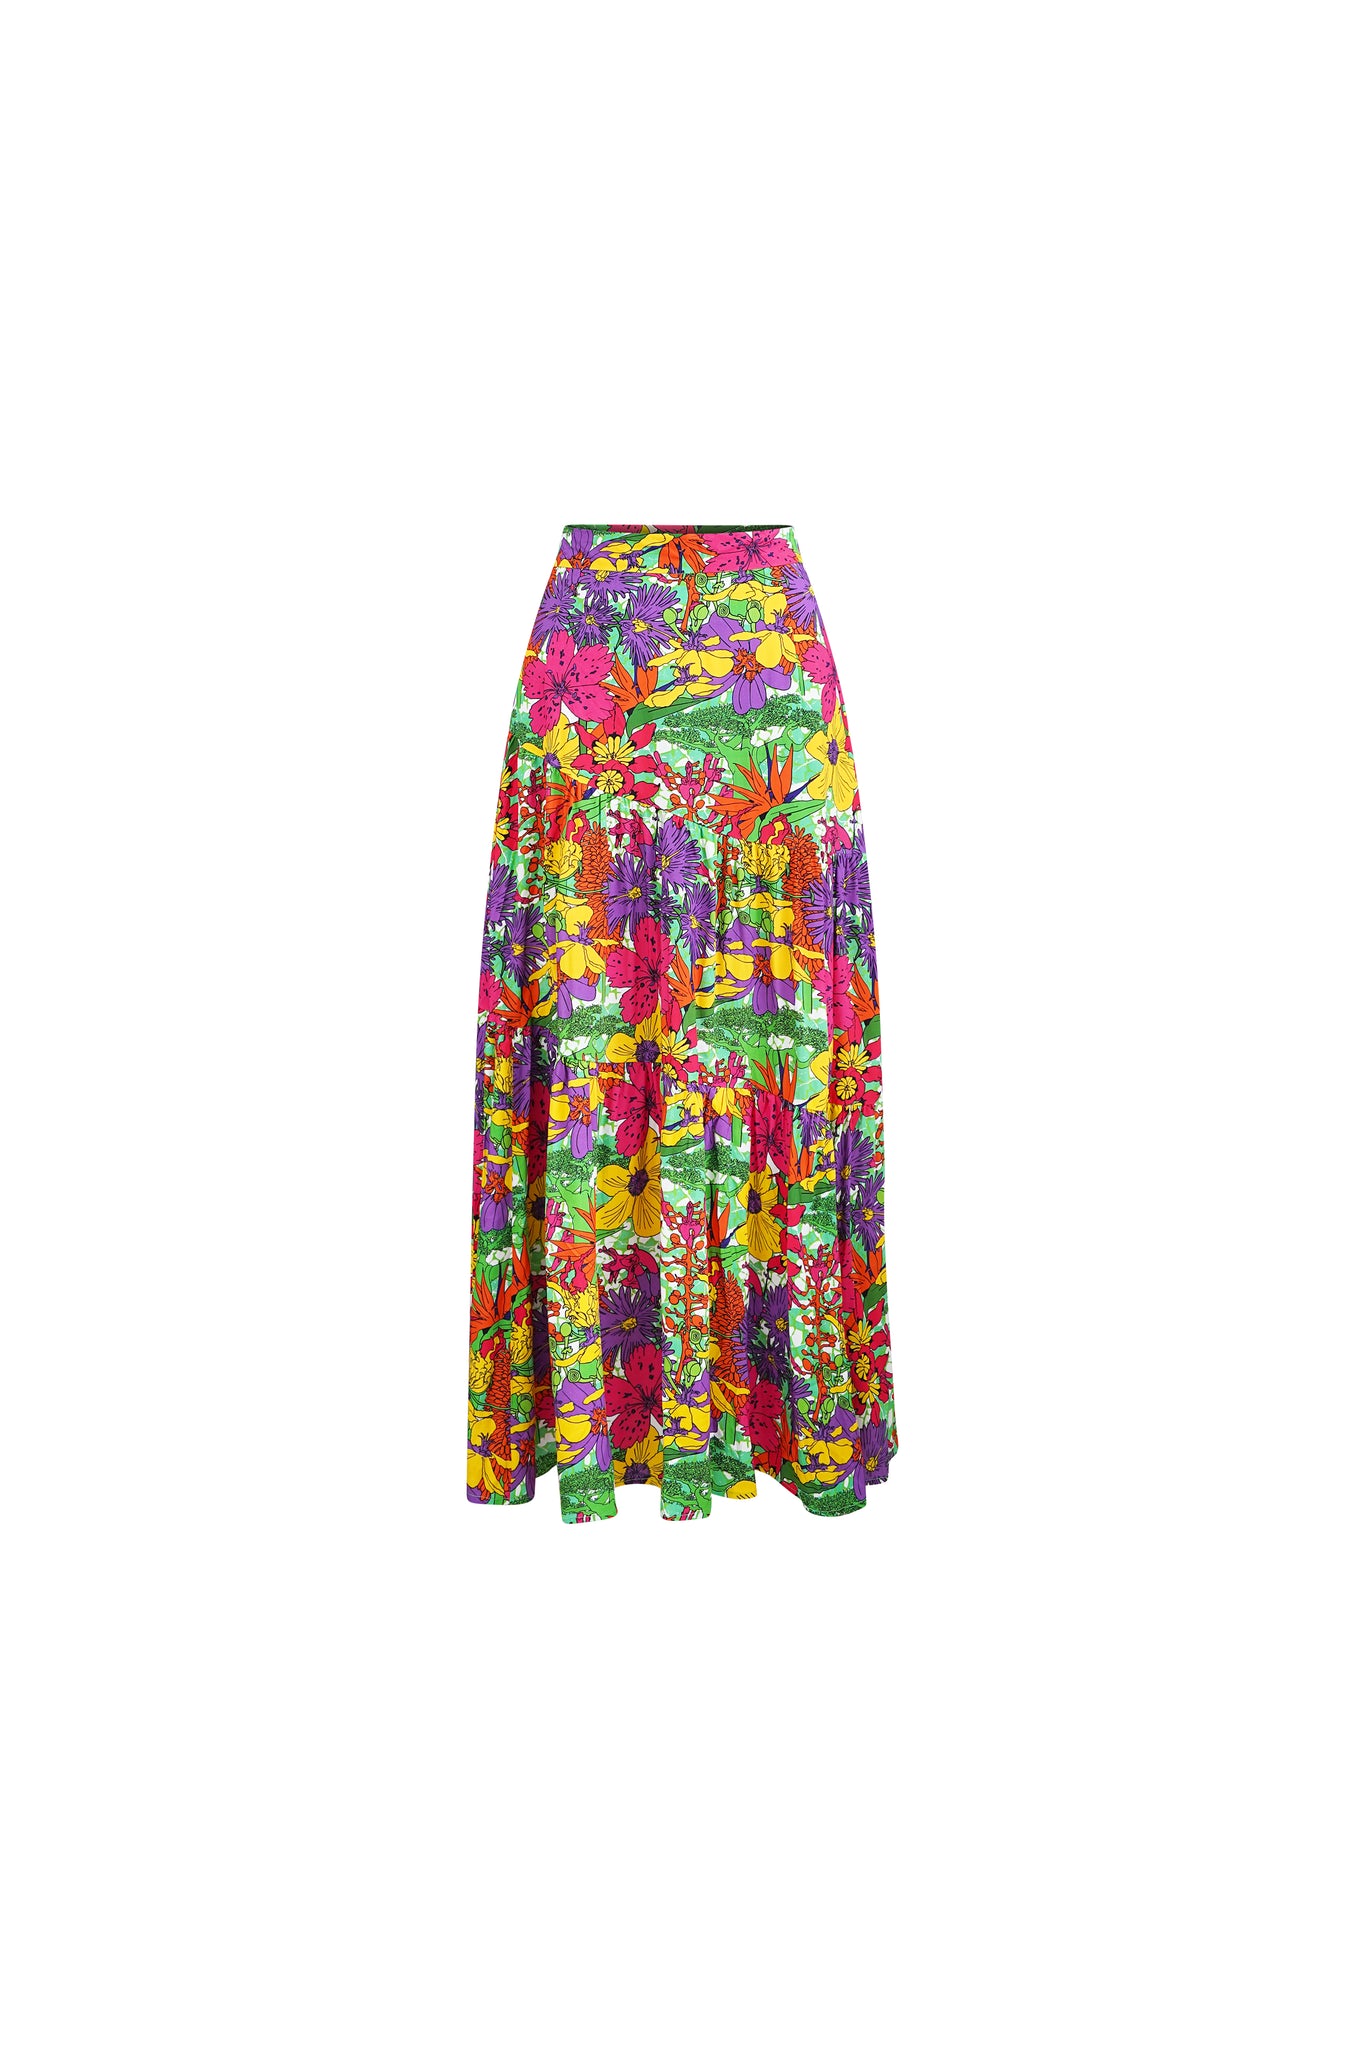 Zikora Maxi Skirt - Green Garden Mosaic Print | ILC OA OG